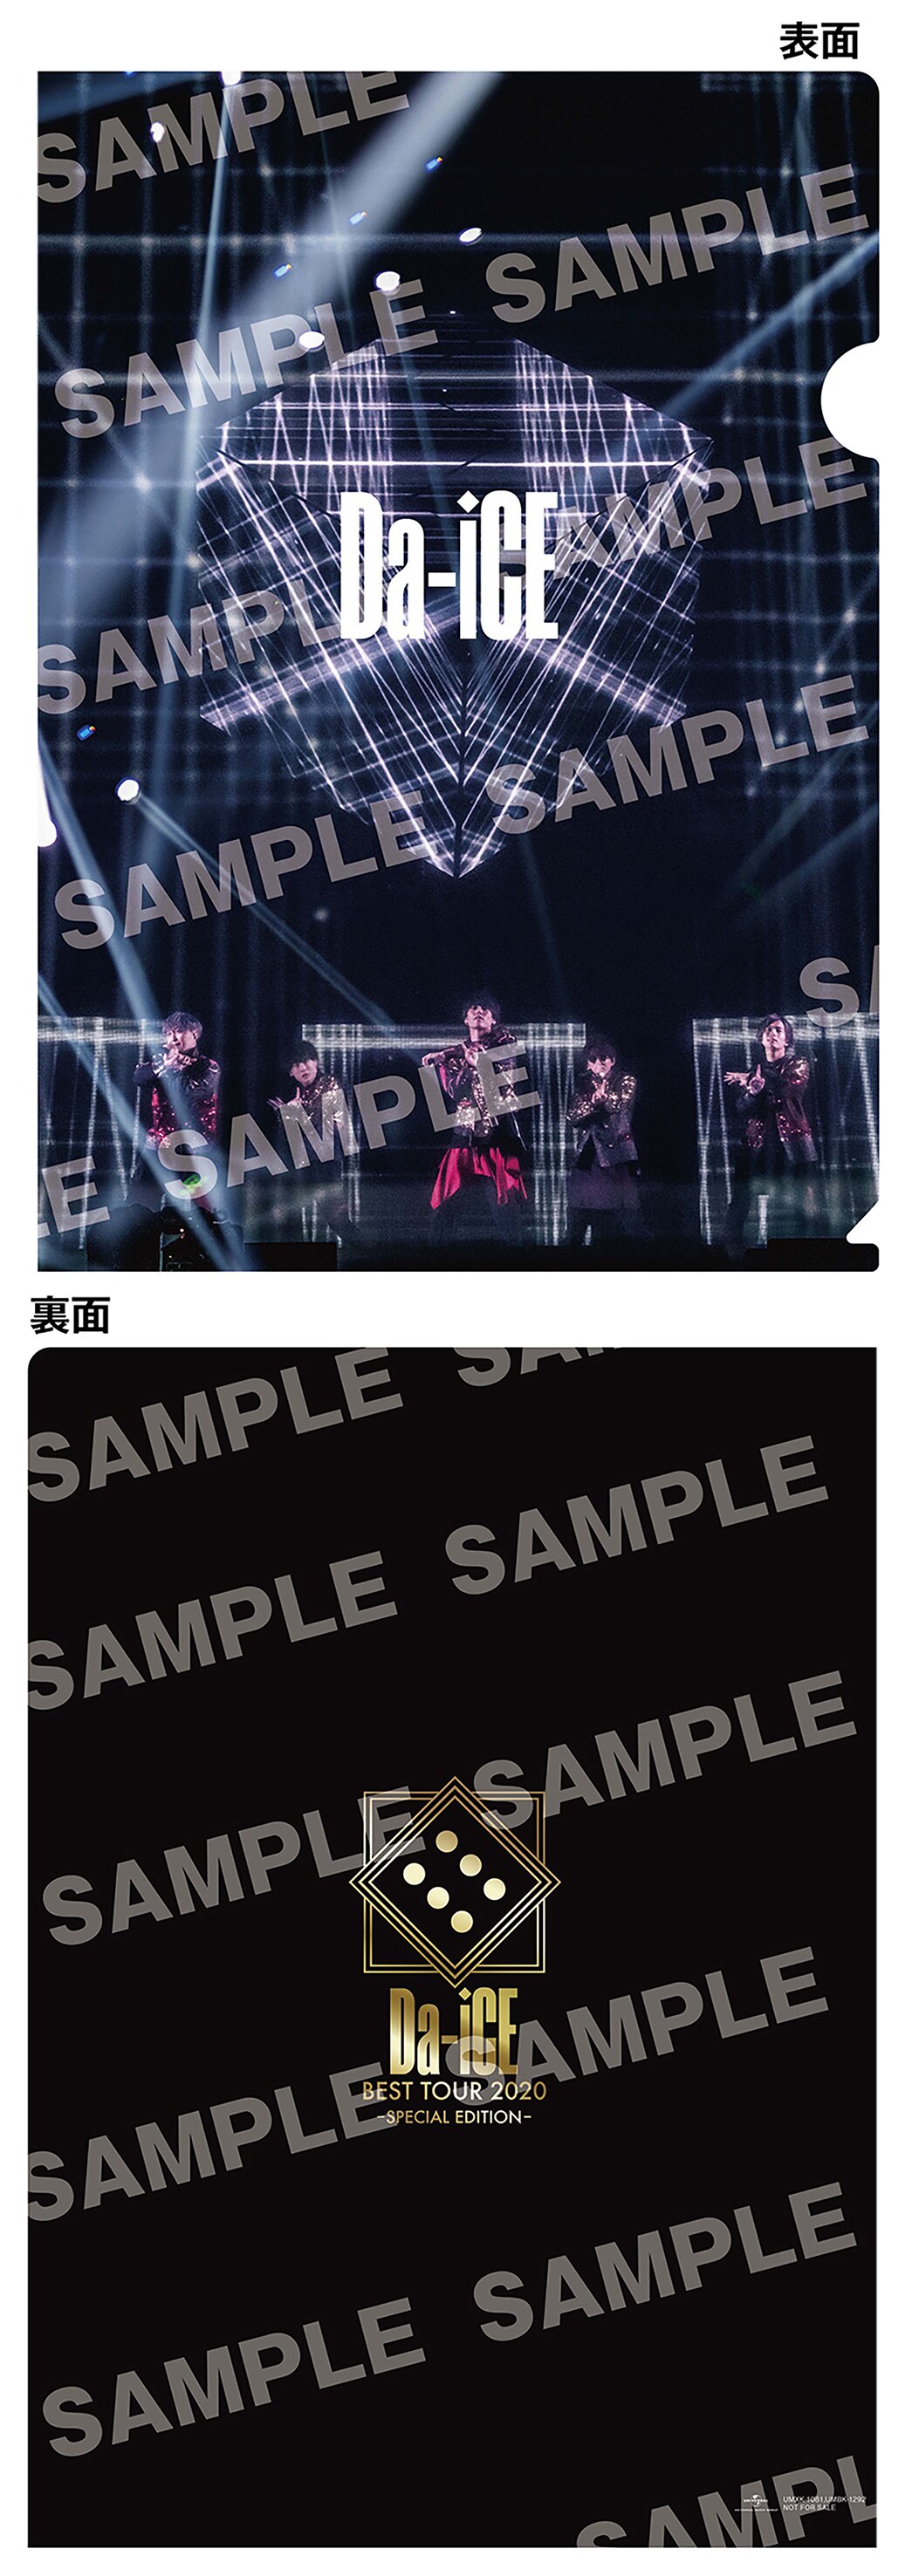 6月17日発売「Da-iCE BEST TOUR 2020 -SPECIAL EDITION-」先着特典 